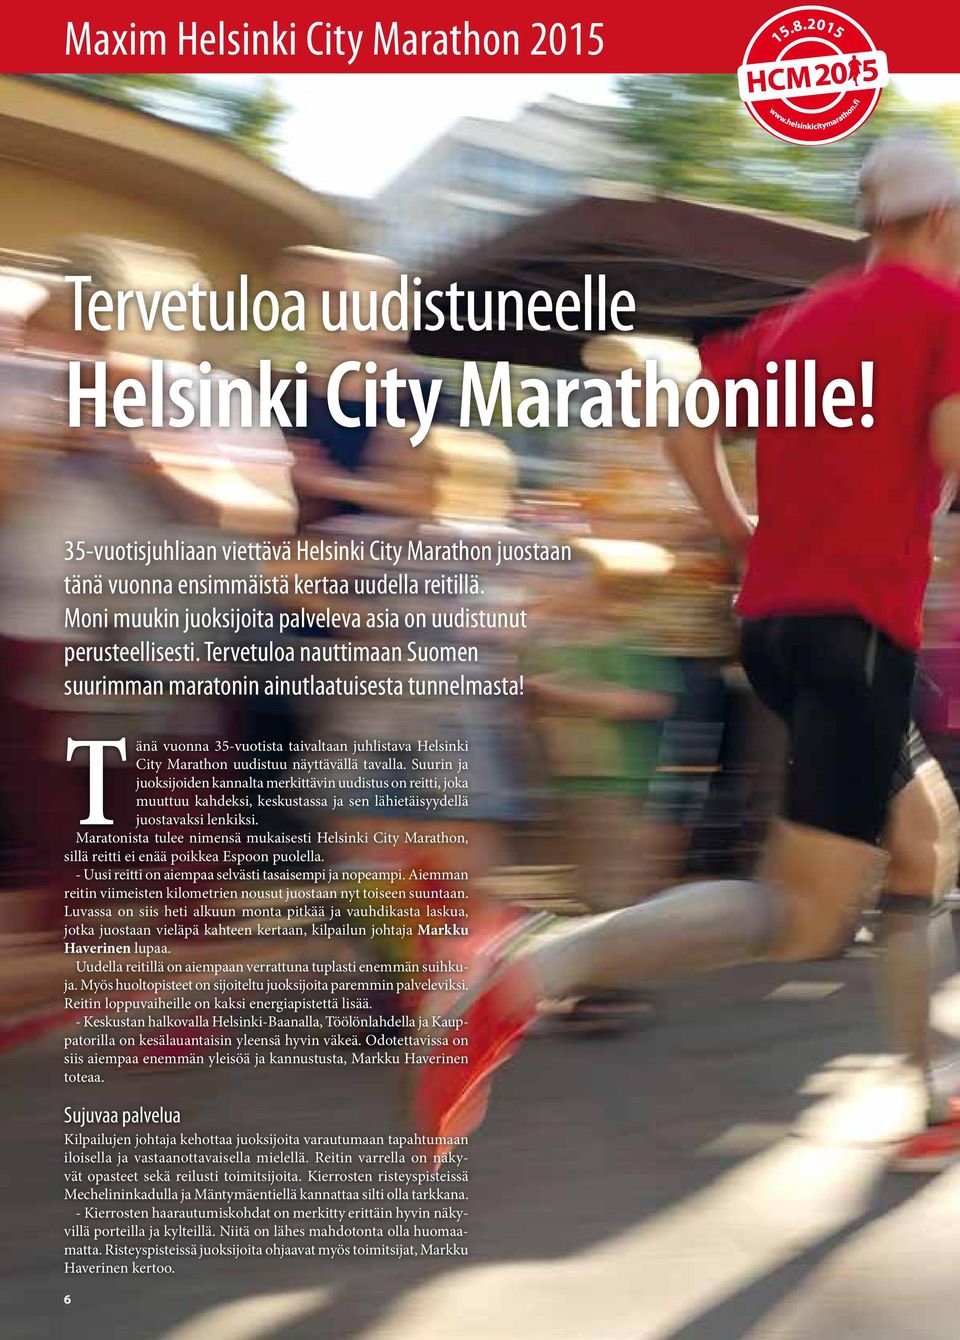 Tänä vuonna 35-vuotista taivaltaan juhlistava Helsinki City Marathon uudistuu näyttävällä tavalla.